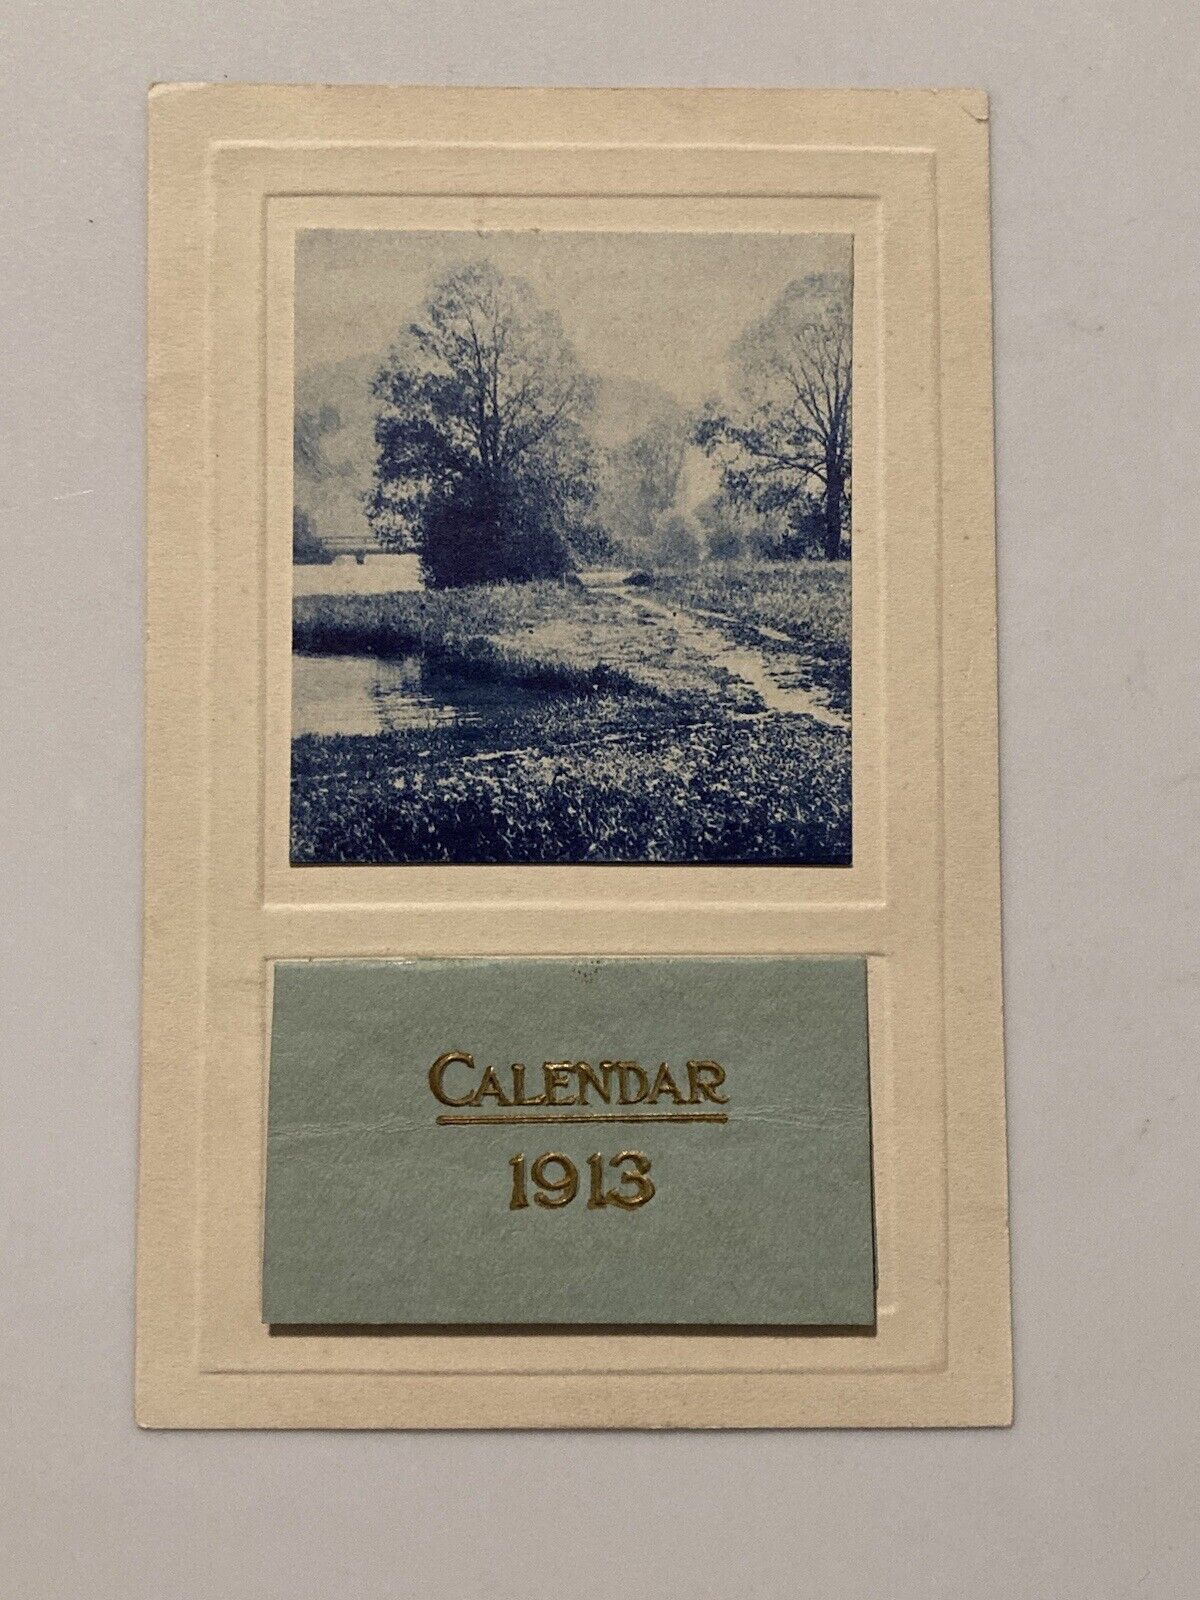 C. 1913 Calendar Vintage Postcard Beautiful Lakeside Landscape Photo Antique